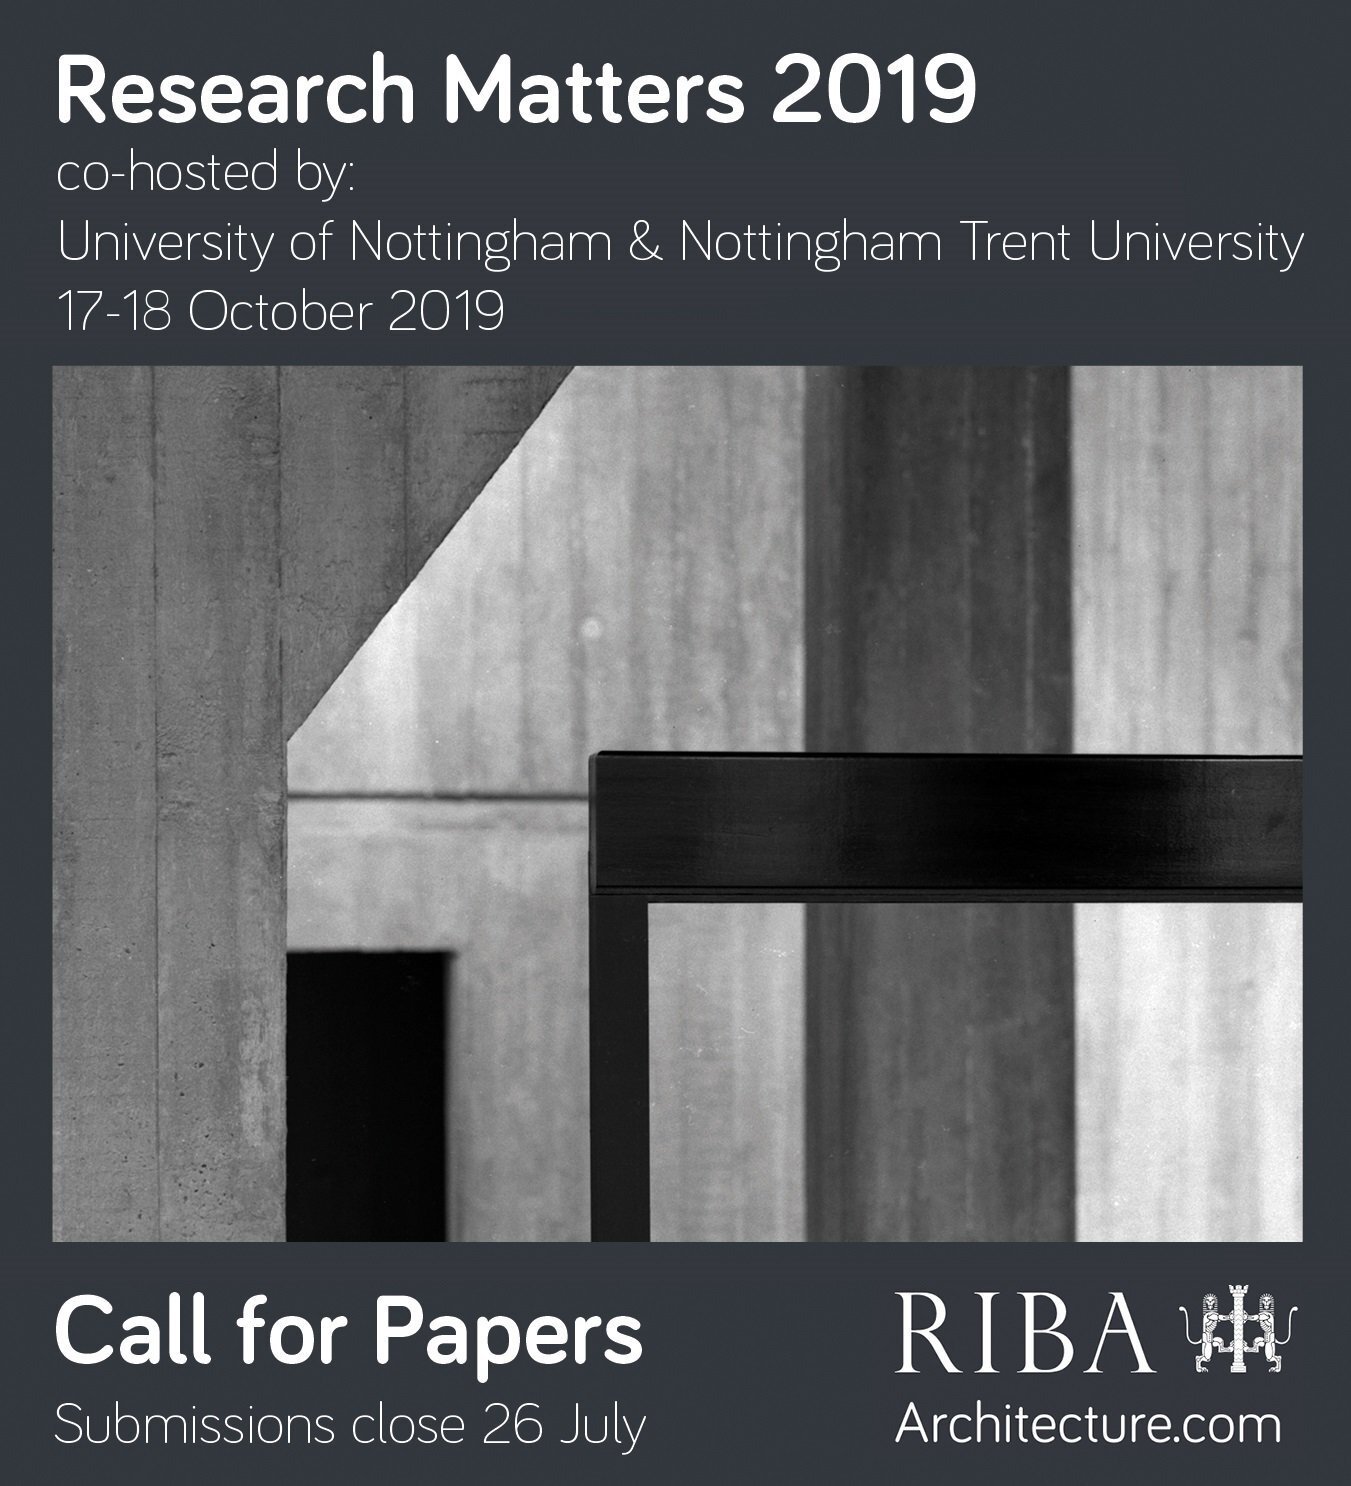  RIBA Research Matters | University of Nottingham and Nottingham Trent University 17 October to 18 October, 2019 